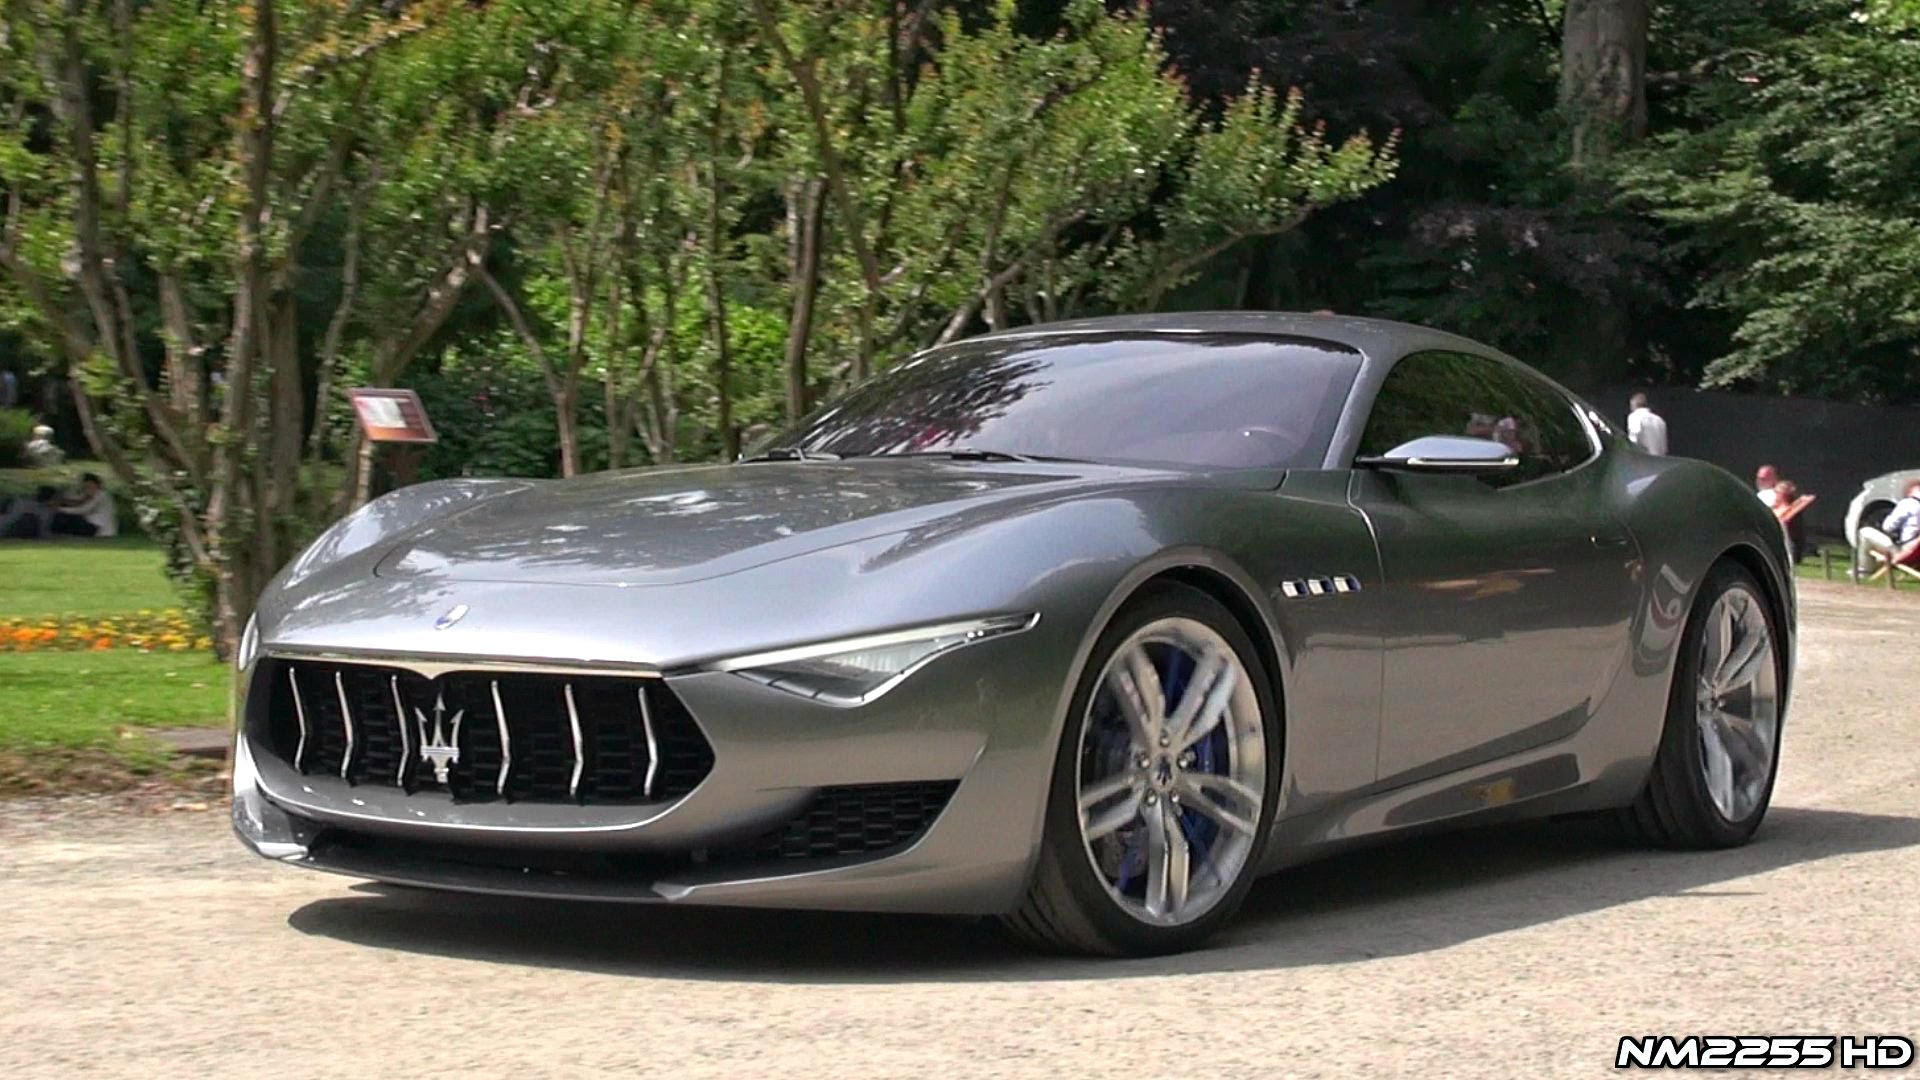 Amazing Maserati Pictures & Backgrounds